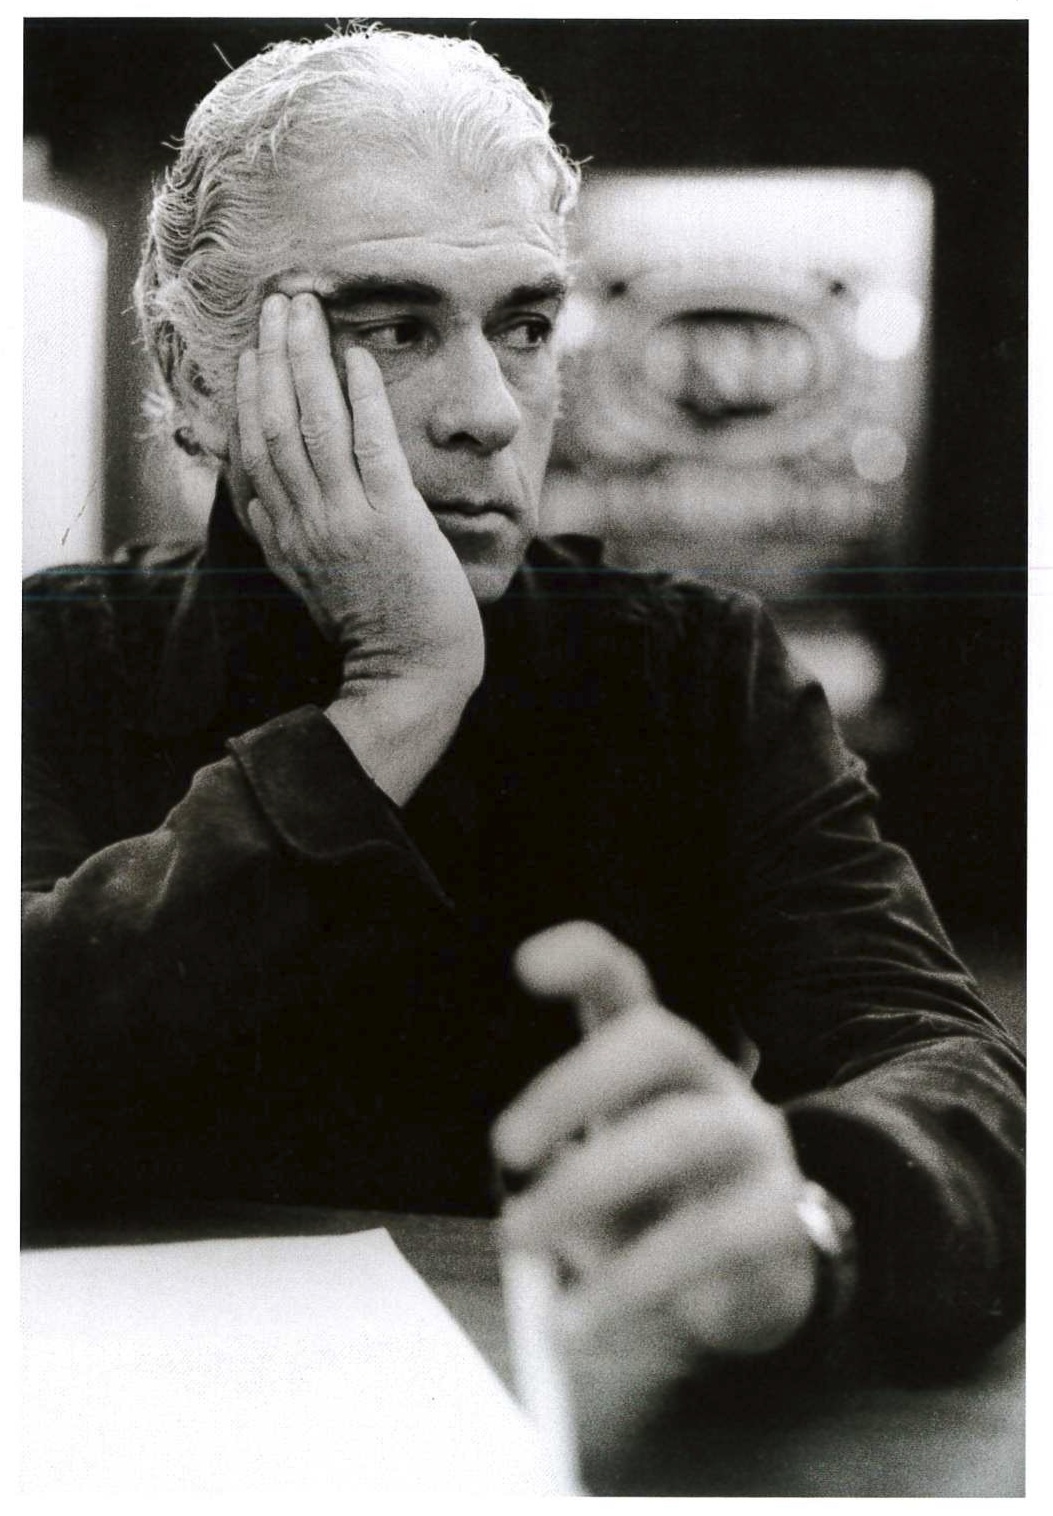   Giorgio Strehler alla conferenza stampa indetta con Patrice Chéreau per la presentazione de “La dispute” di Marivaux al Teatro Lirico. Milano, 1976.&nbsp;  